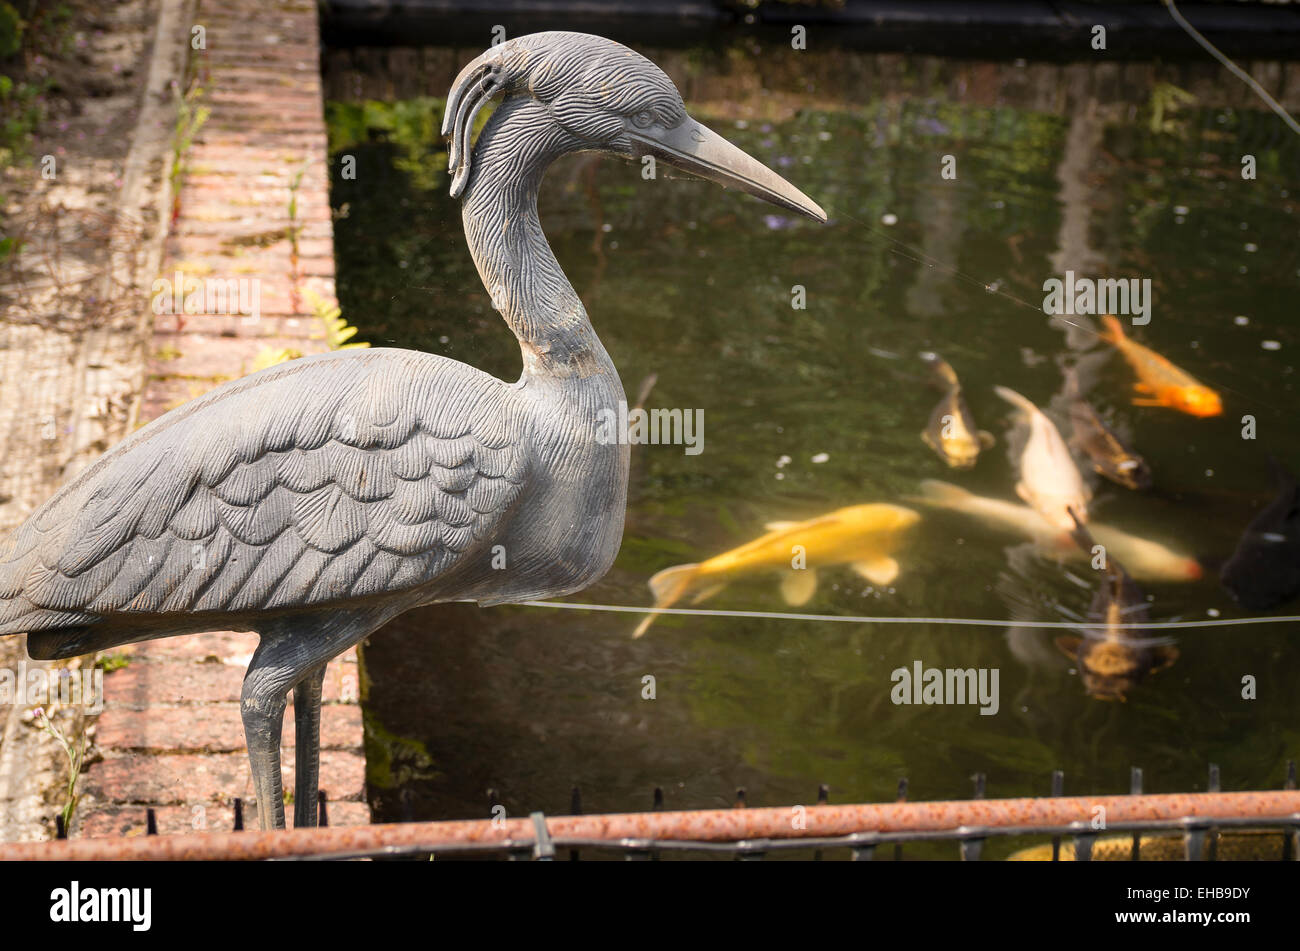 Un vigilante de señuelo artificial heron con vistas a gold fish en una piscina Foto de stock